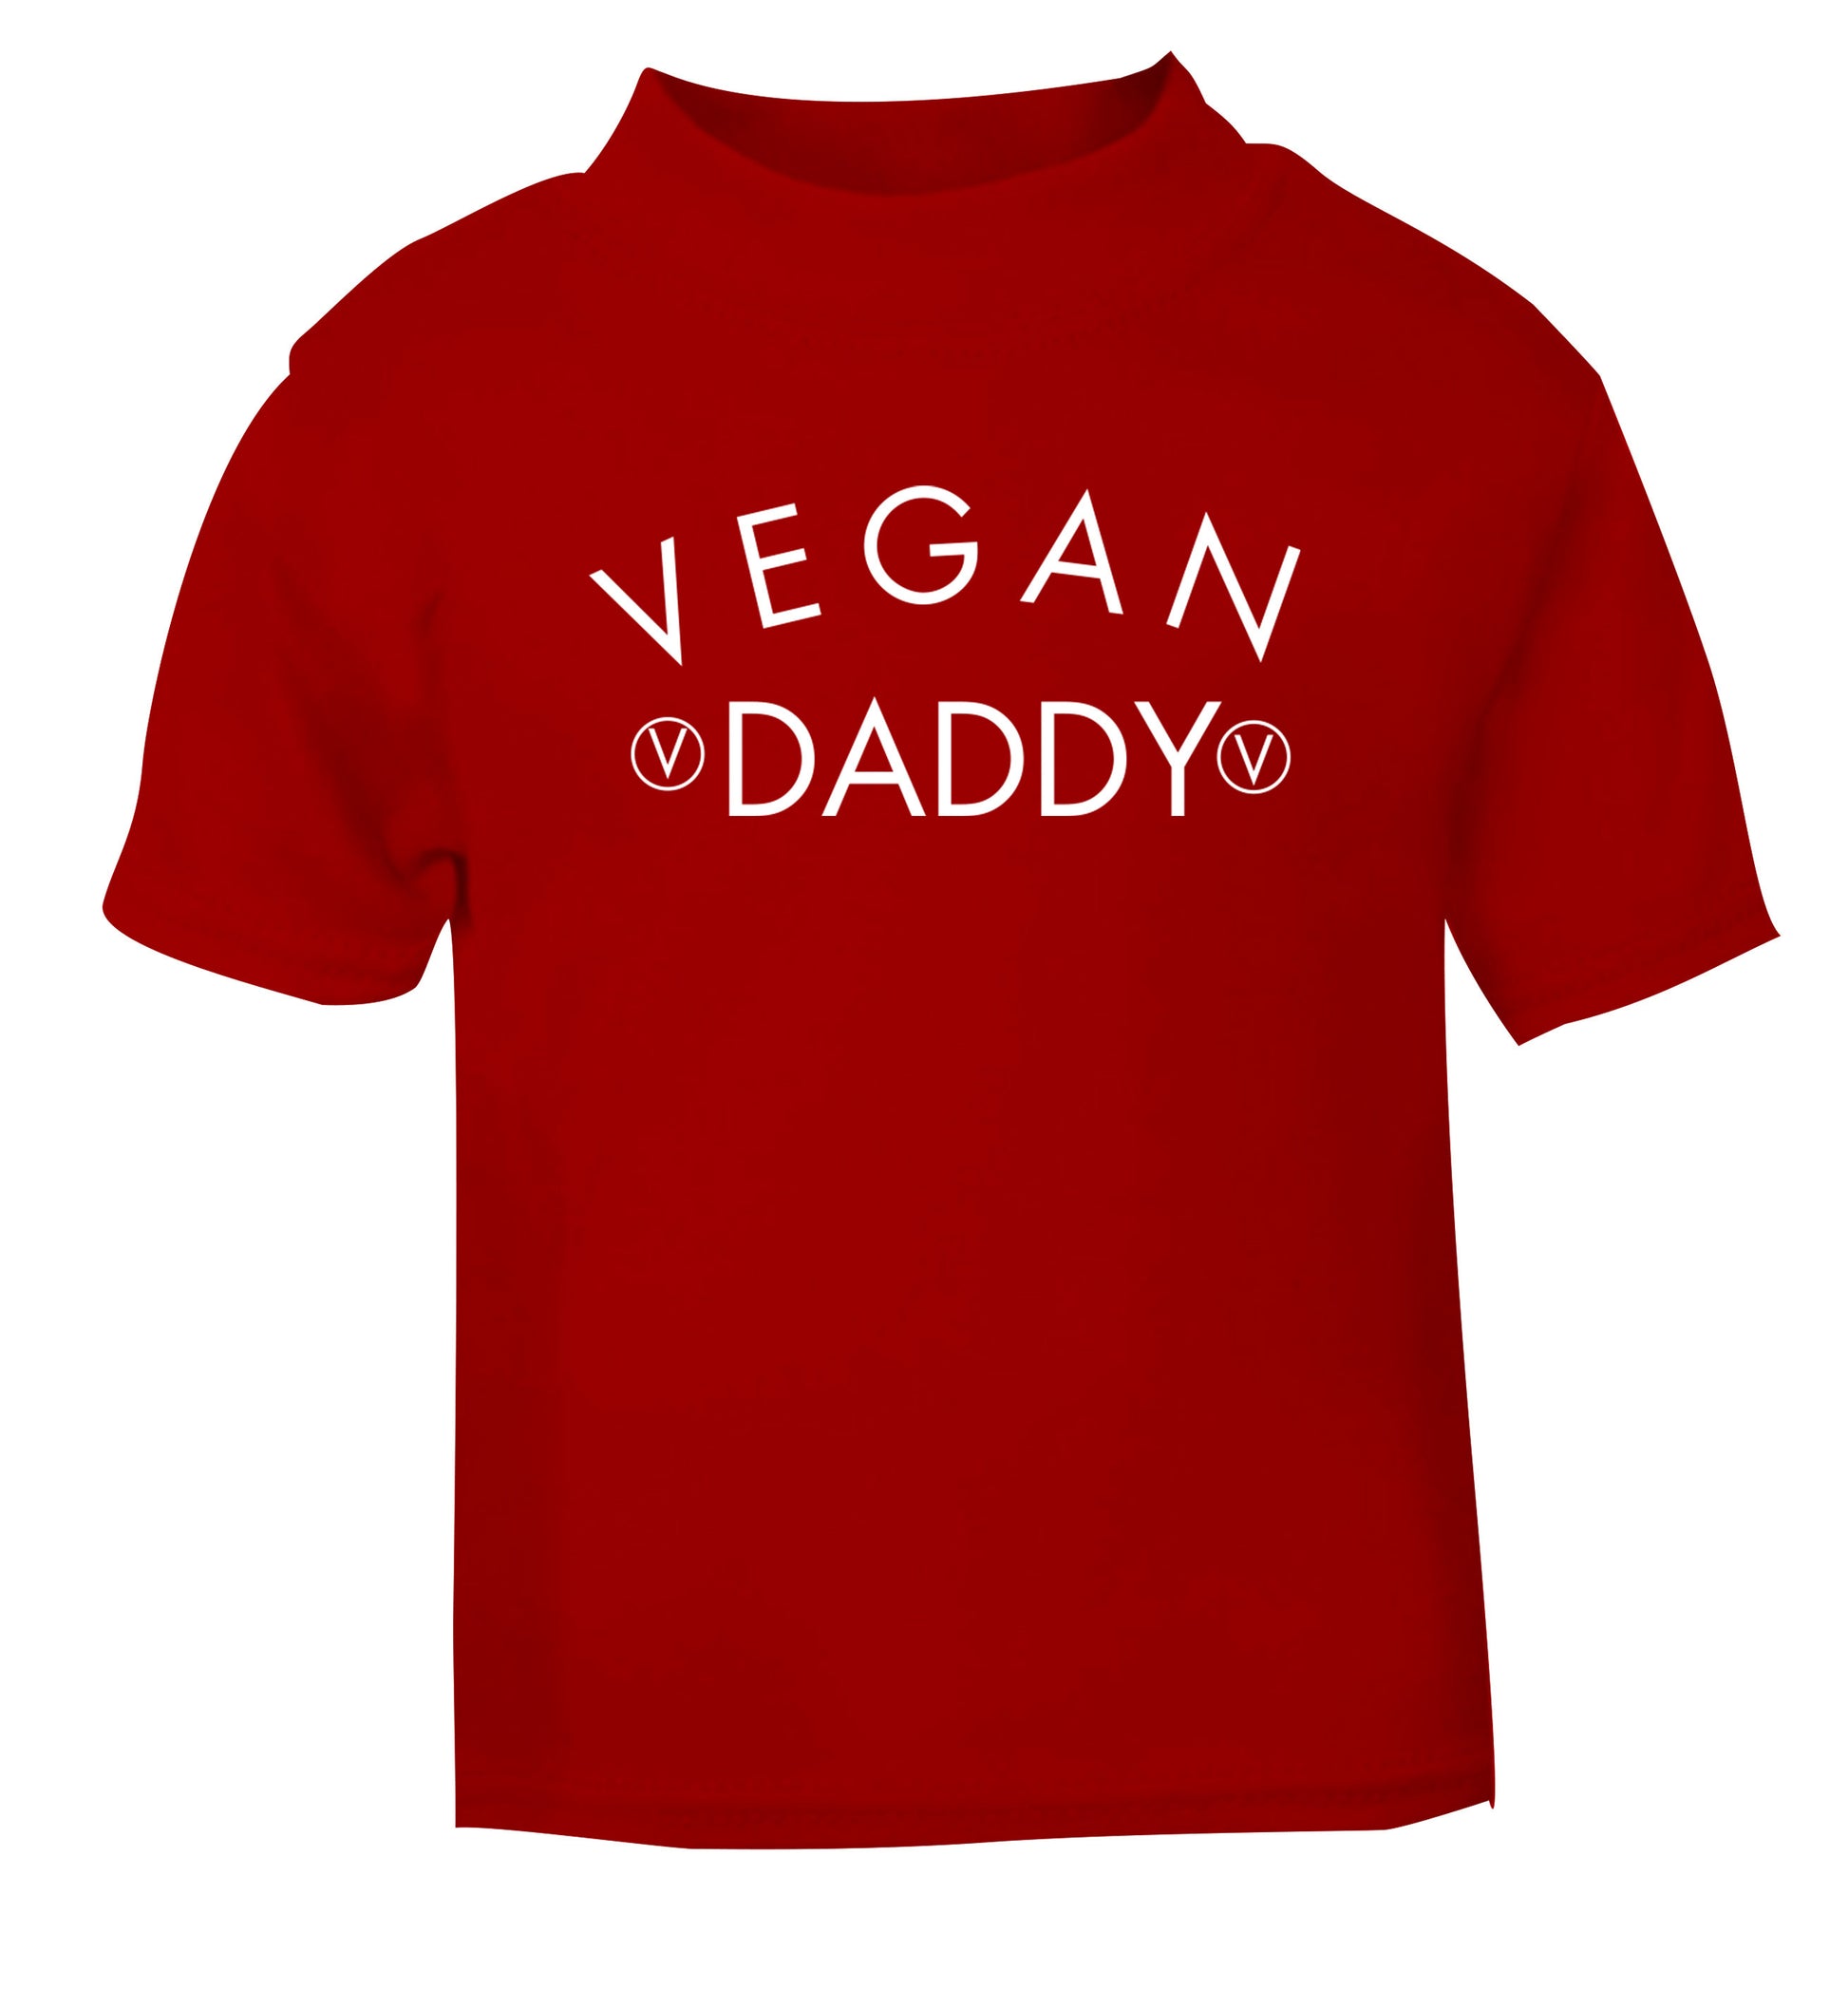 Vegan daddy red Baby Toddler Tshirt 2 Years